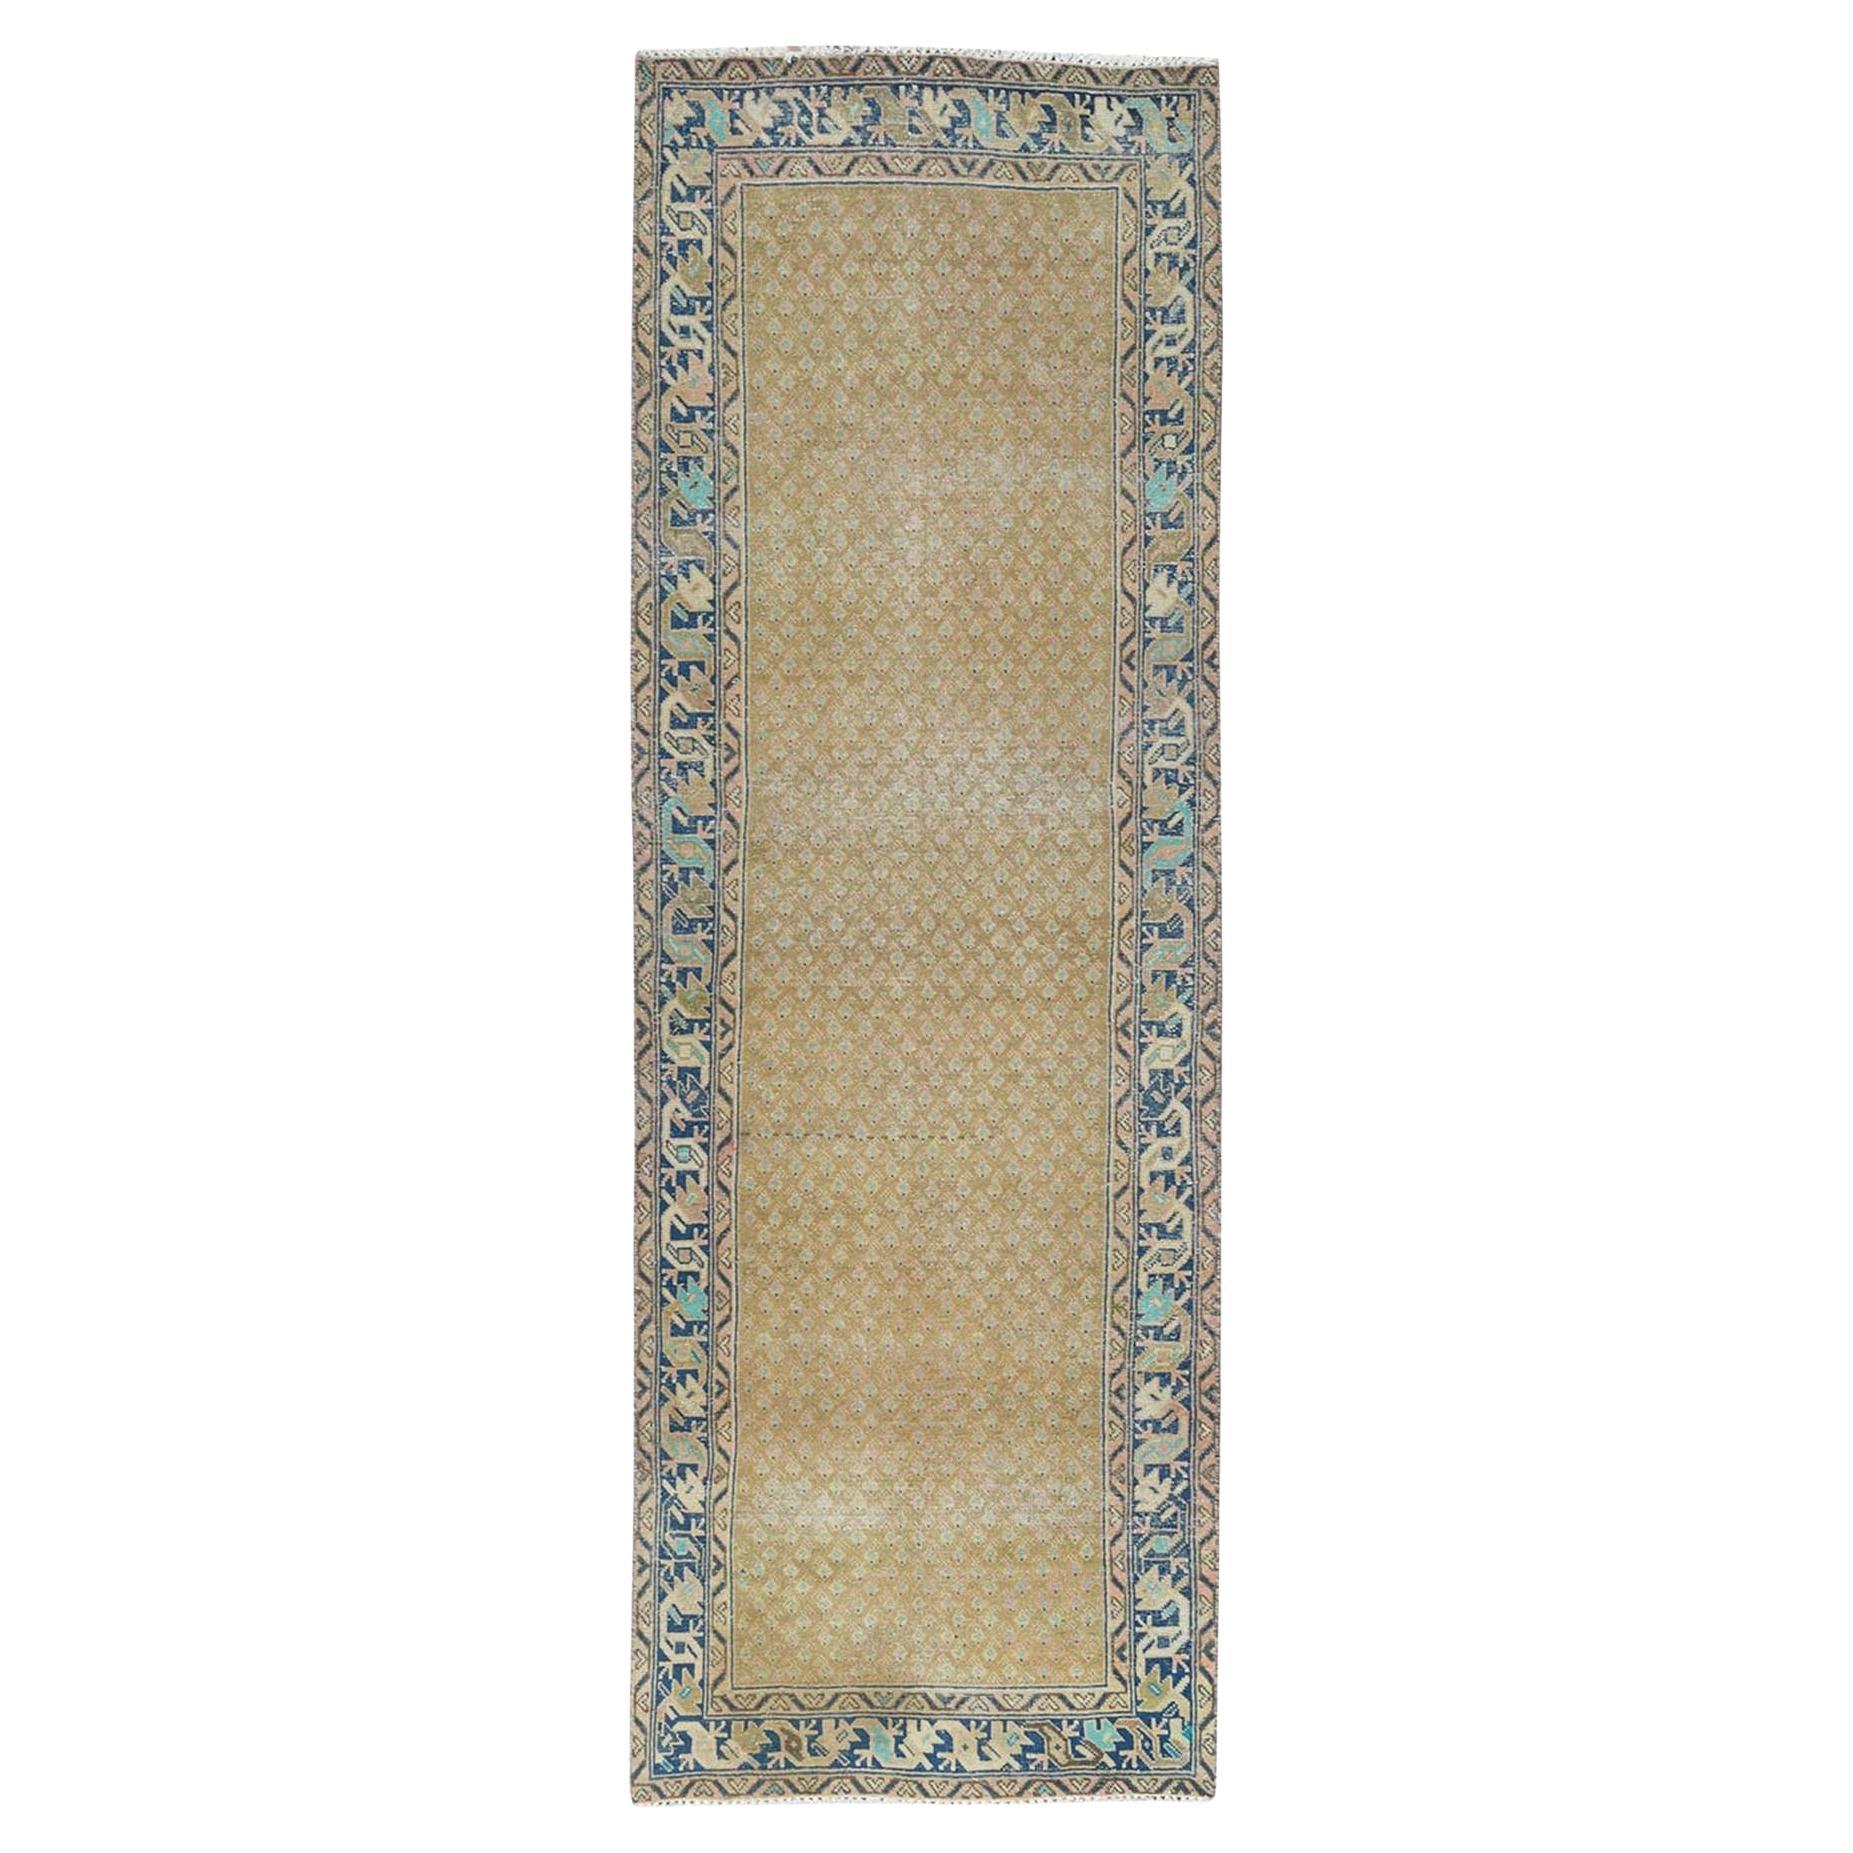 Persischer, handgeknüpfter, reiner, brauner Mocha-Teppich aus reiner Wolle